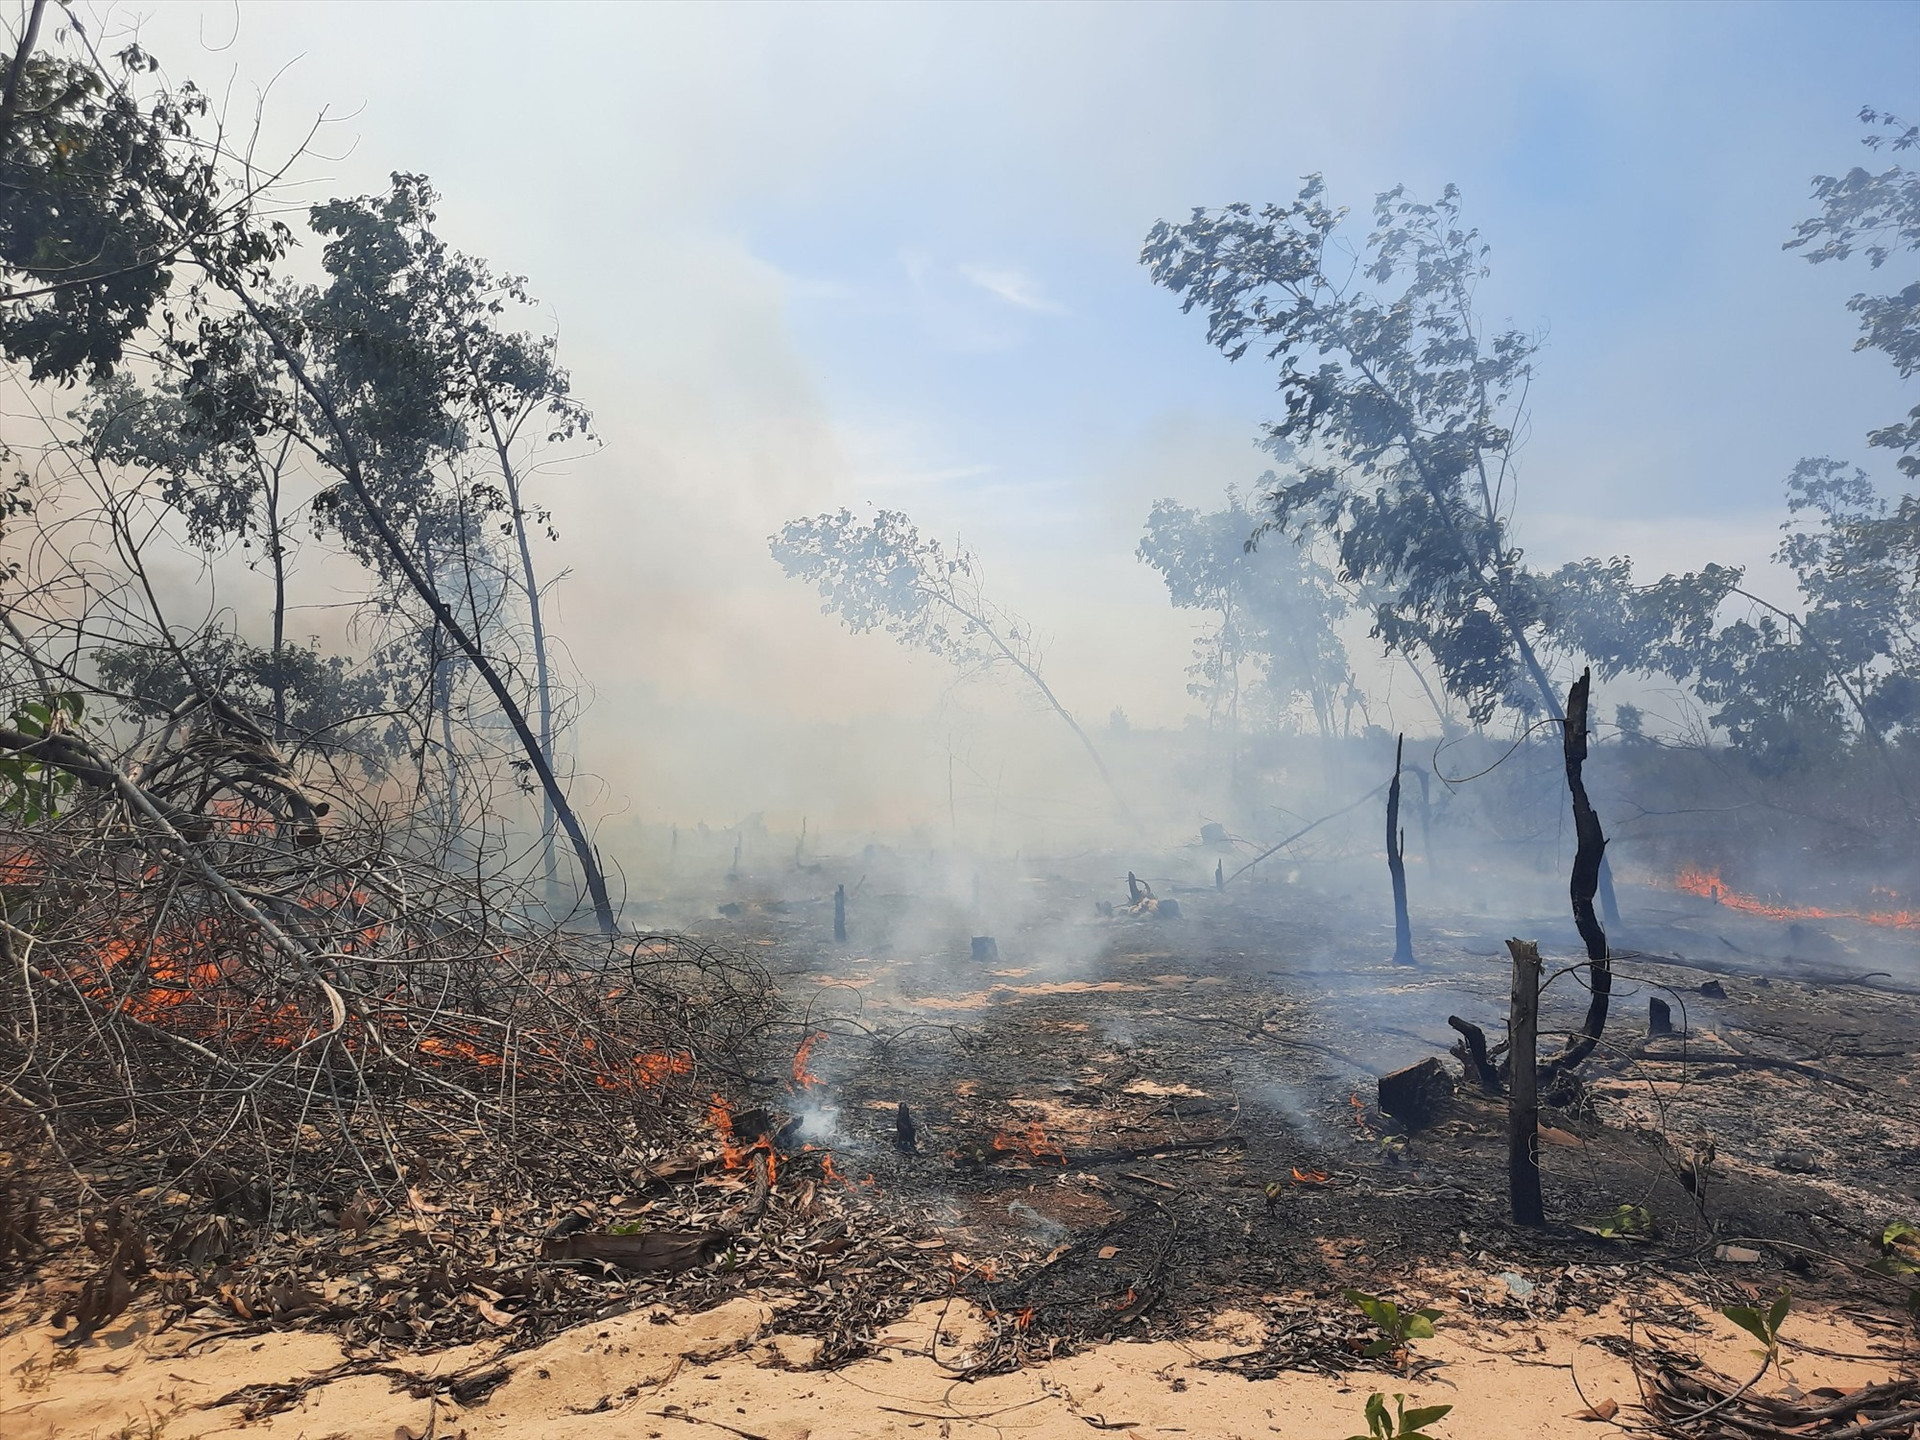 Khu vực rừng trồng ven biển huyện Thăng Bình thời gian gần đây liên tục xảy ra các vụ cháy lớn. Ảnh: HỒ QUÂN